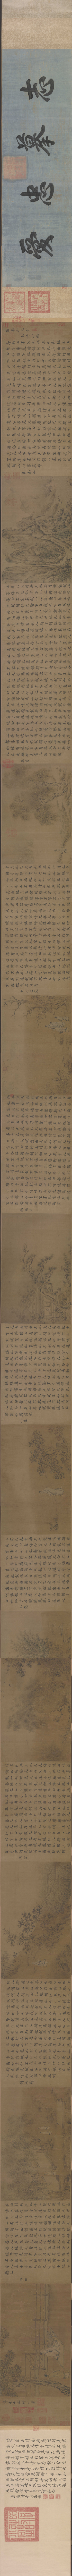 B5043018《诗经·小雅·节南山之什图卷(全卷)》宋代画家马和之高清作品 宋代-第1张